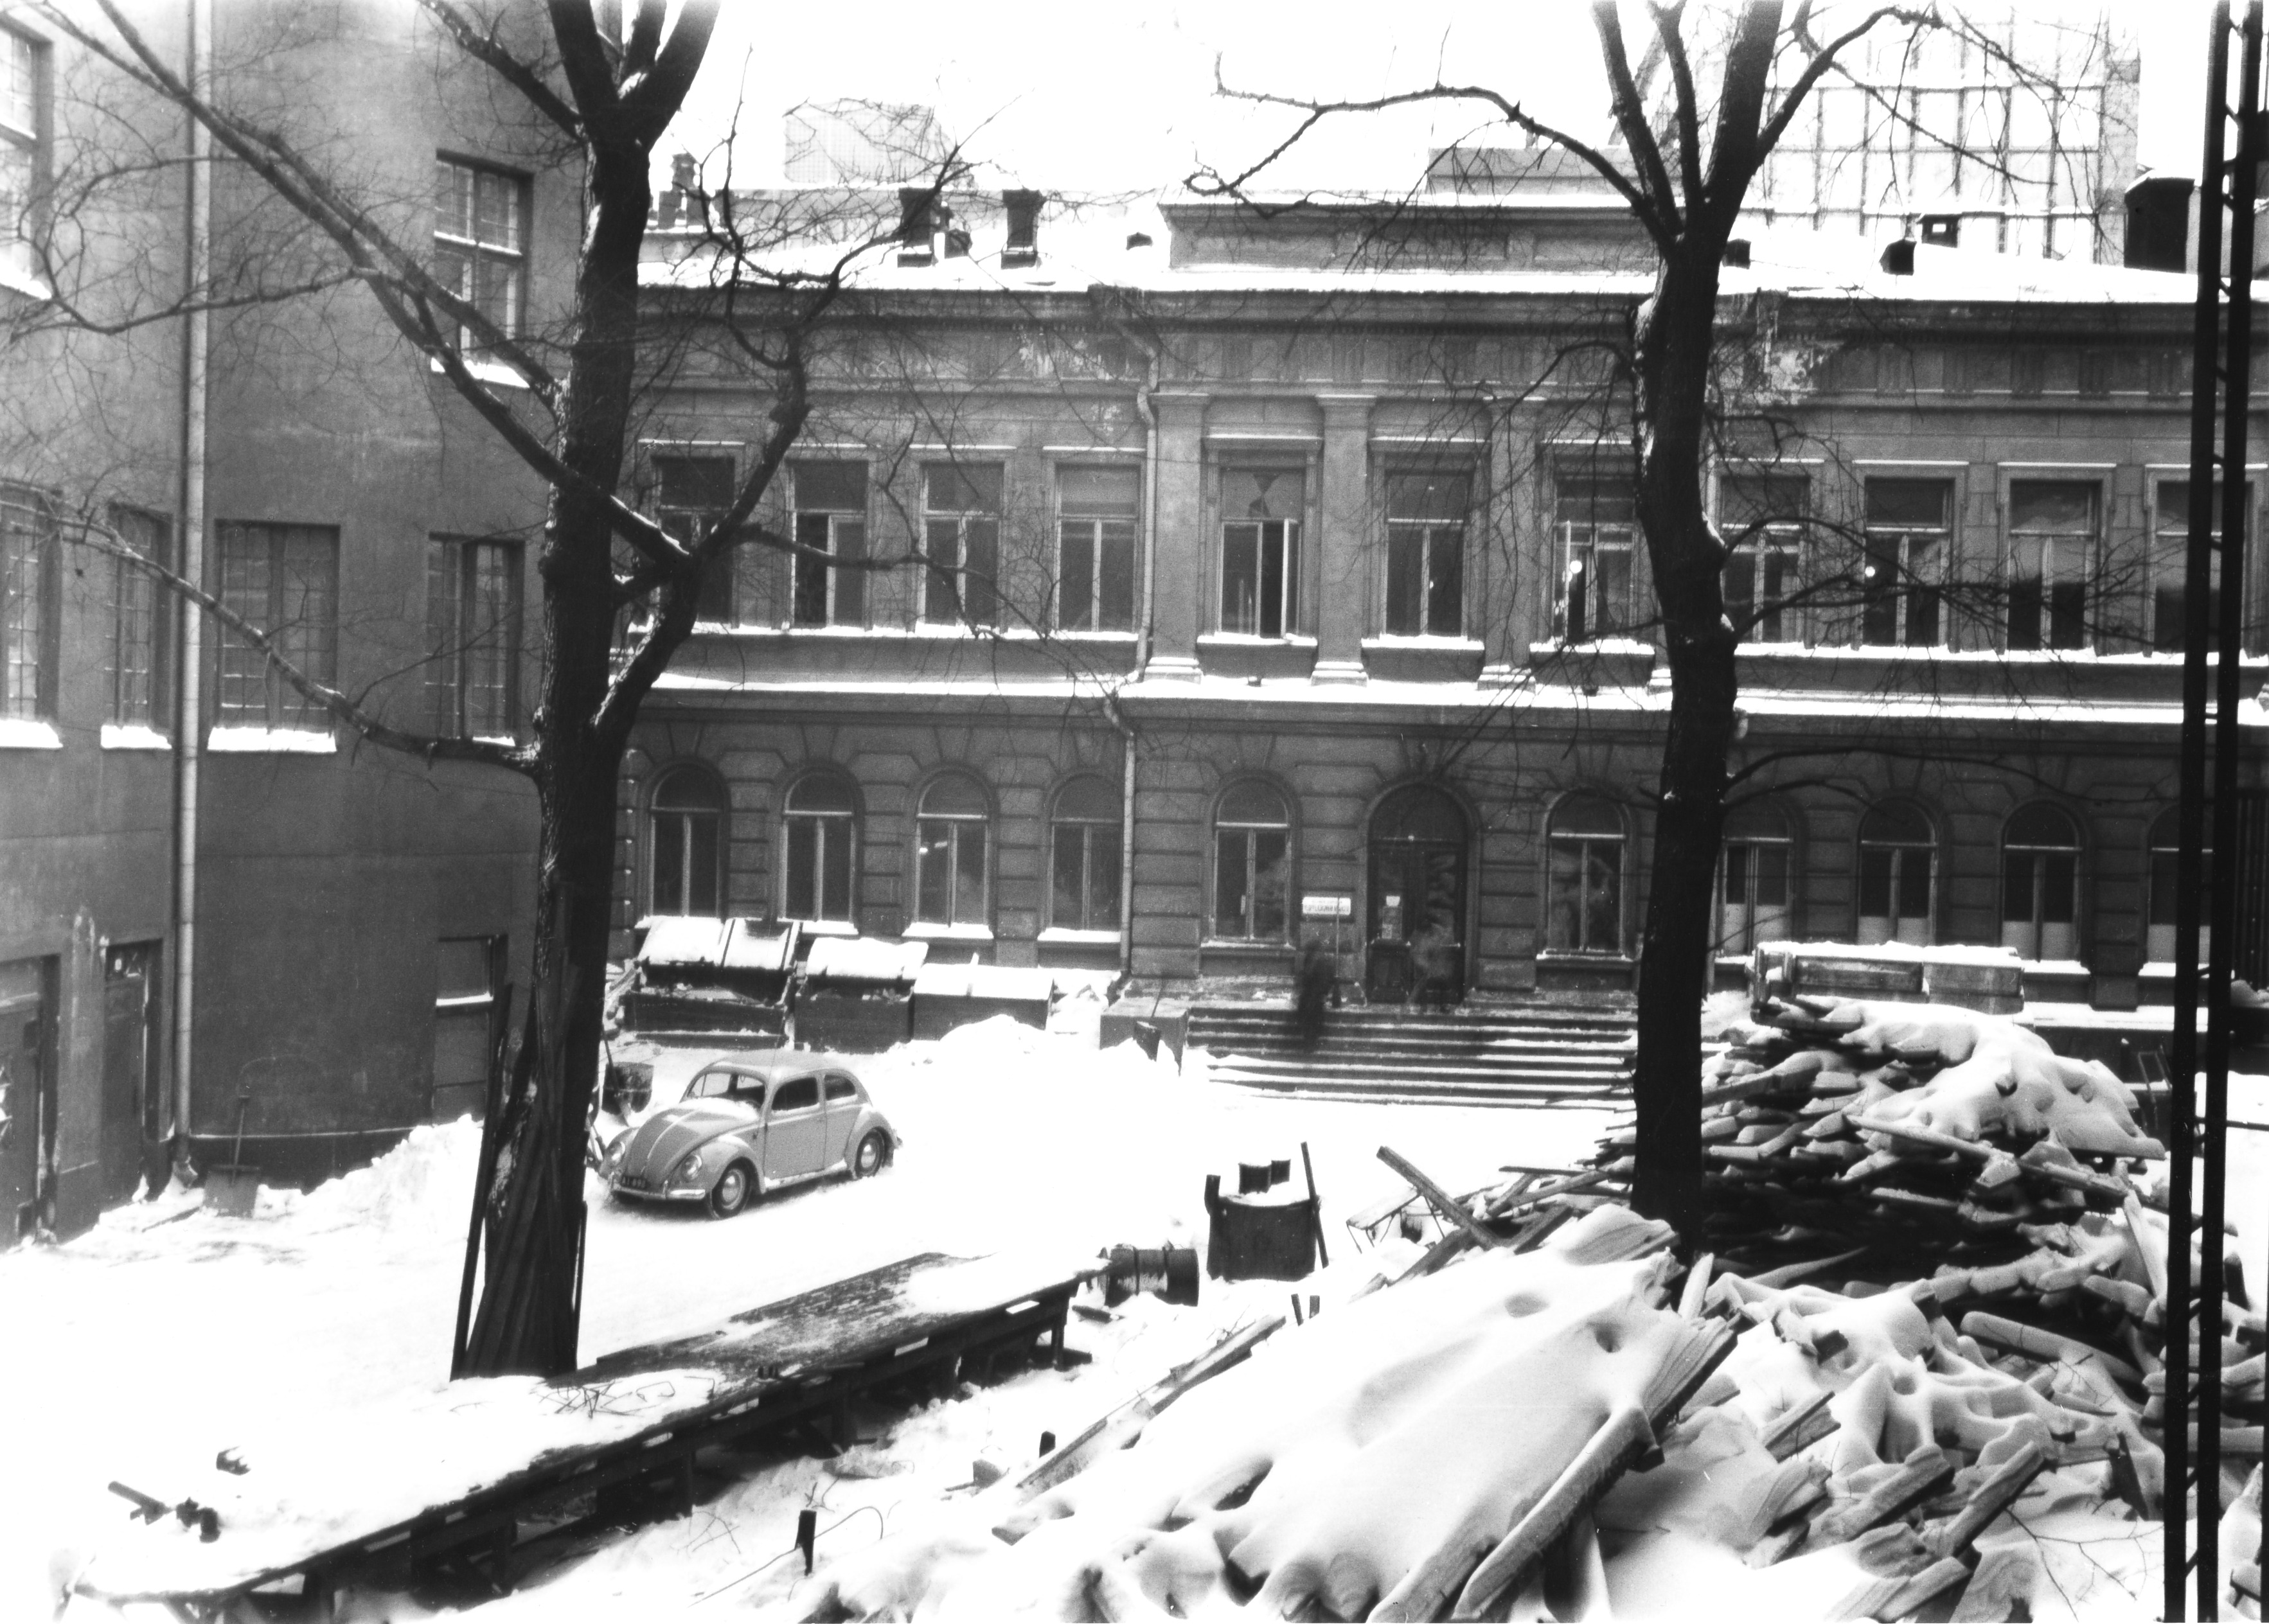 Helsingin yliopiston ylioppilaskunnan kirjasto. Mannerheimintie 5. Kaivopihan kirjastotalo purettiin v. 1955.